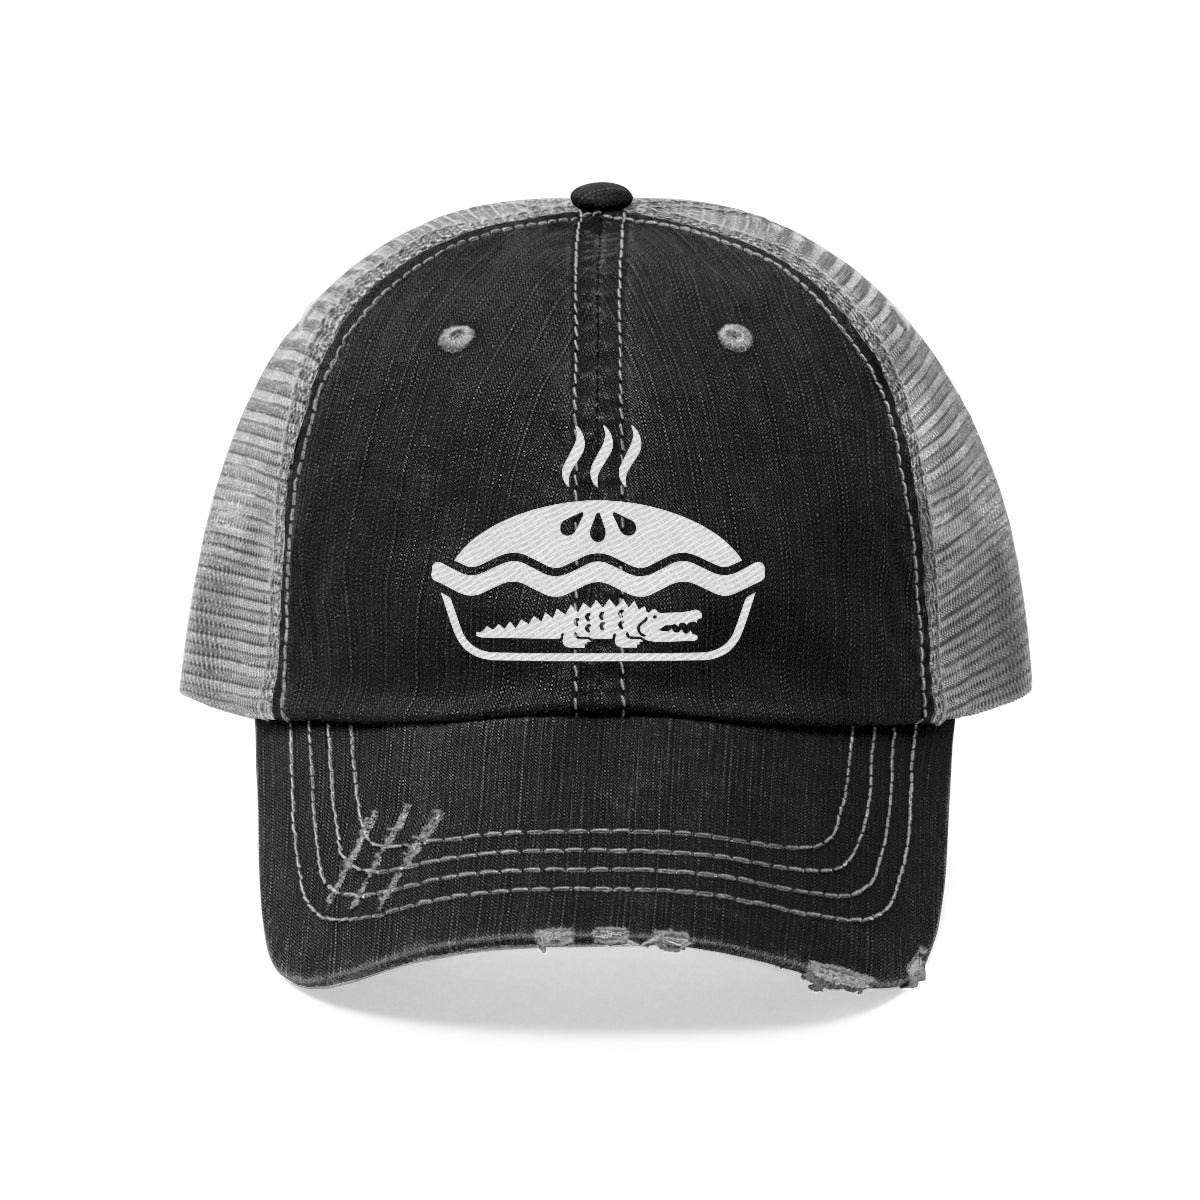 Trucker Style Hat Alligator Pie